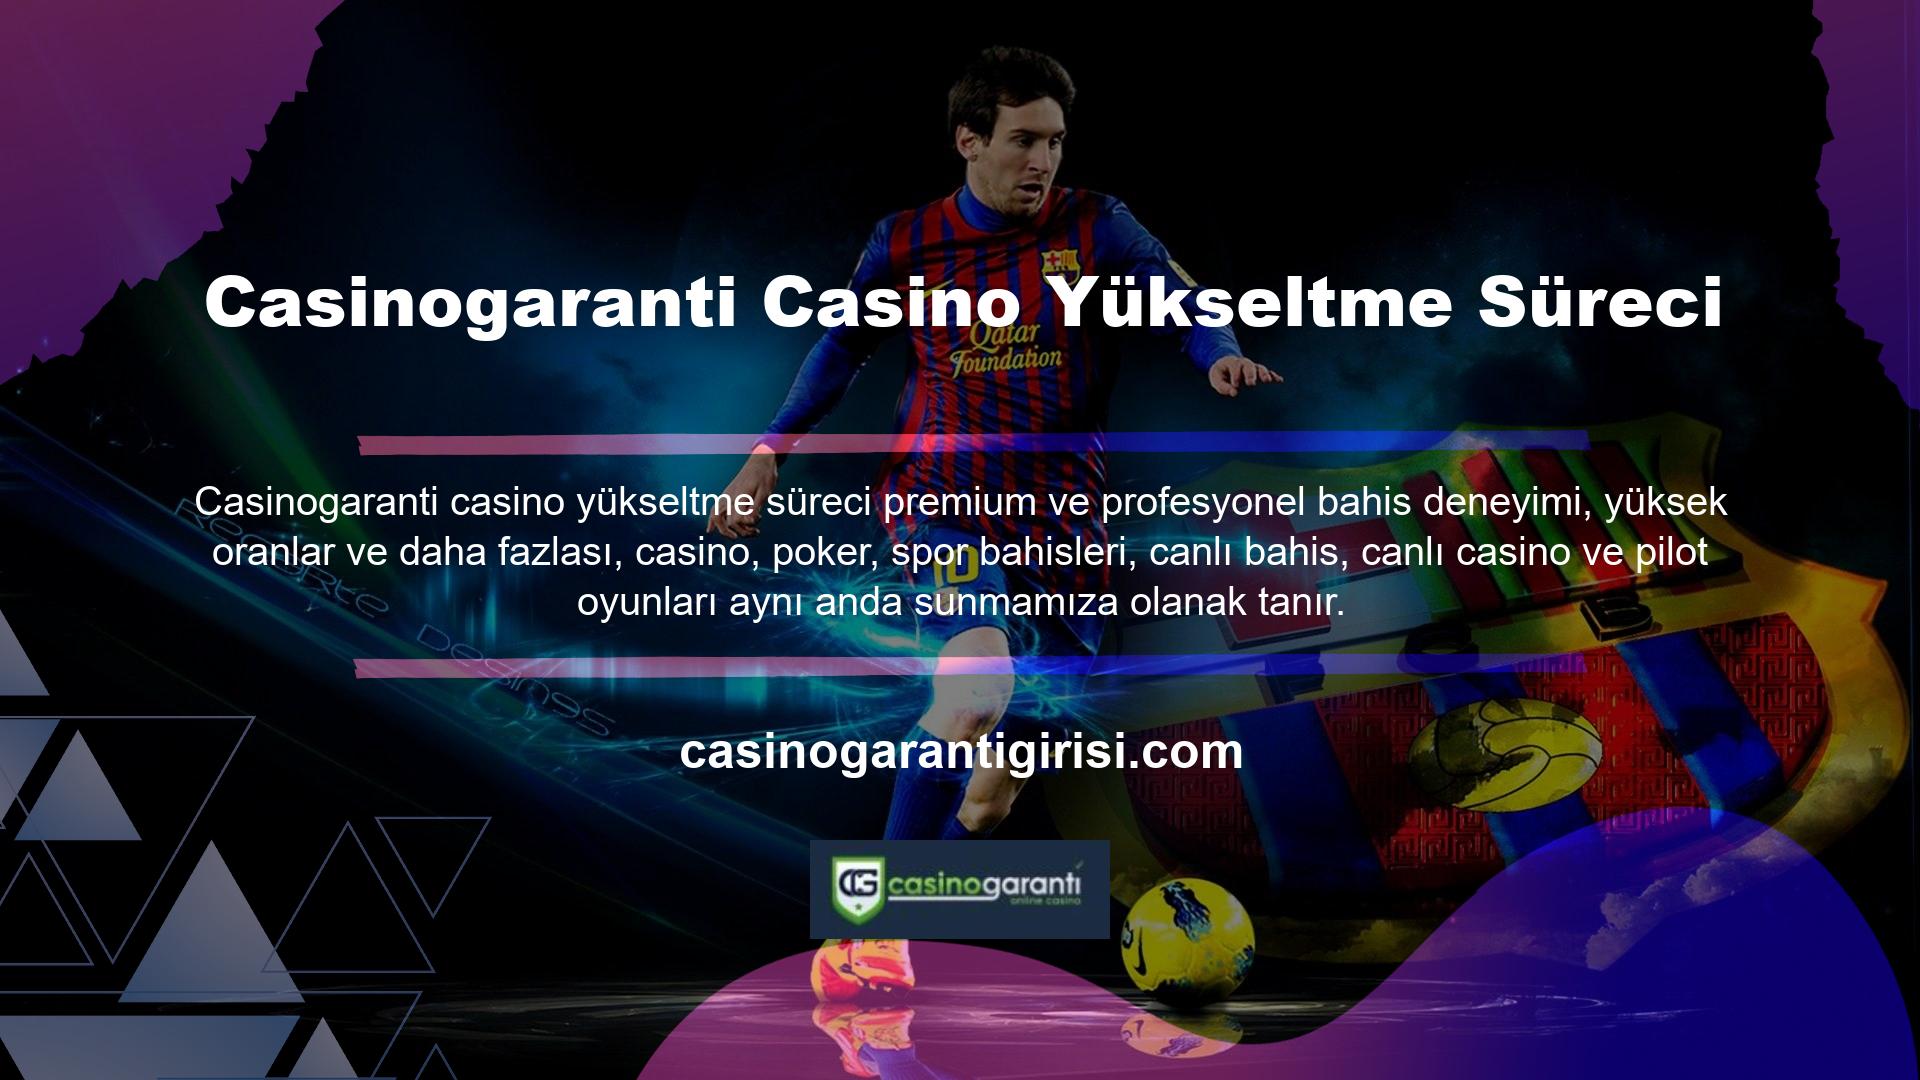 Mobil cihazınızdan Casinogaranti Casino upgrade işlemi mobil uygulama sistemine giriş yaparak bu oyunların tamamına kesintisiz olarak ulaşabilirsiniz